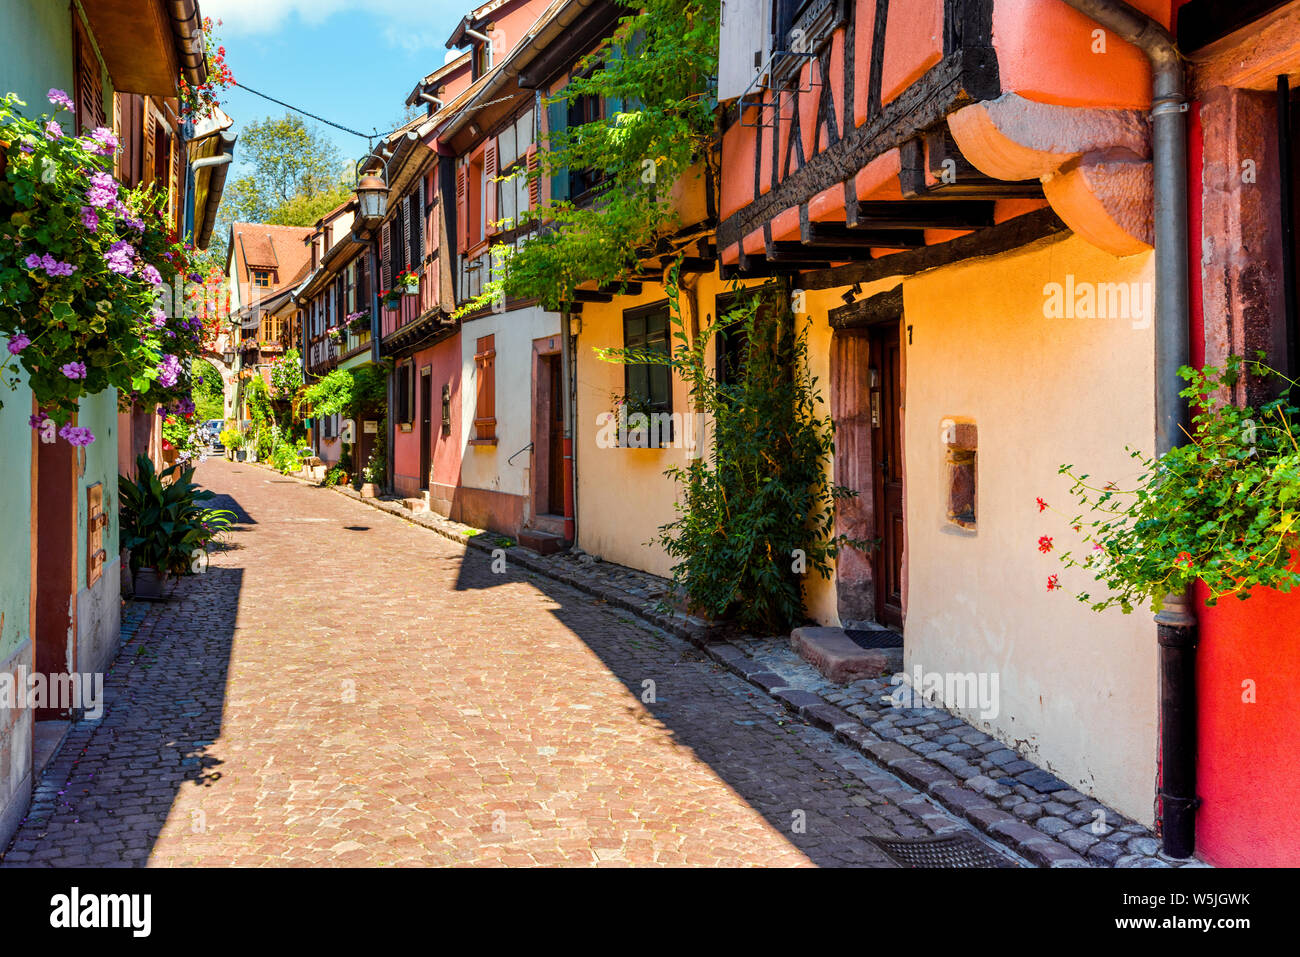 Colorido pintoresco Lane en la vieja ciudad de Kaysersberg, Ruta del Vino de Alsacia, Francia, casas con entramados de madera con decoración floral Foto de stock